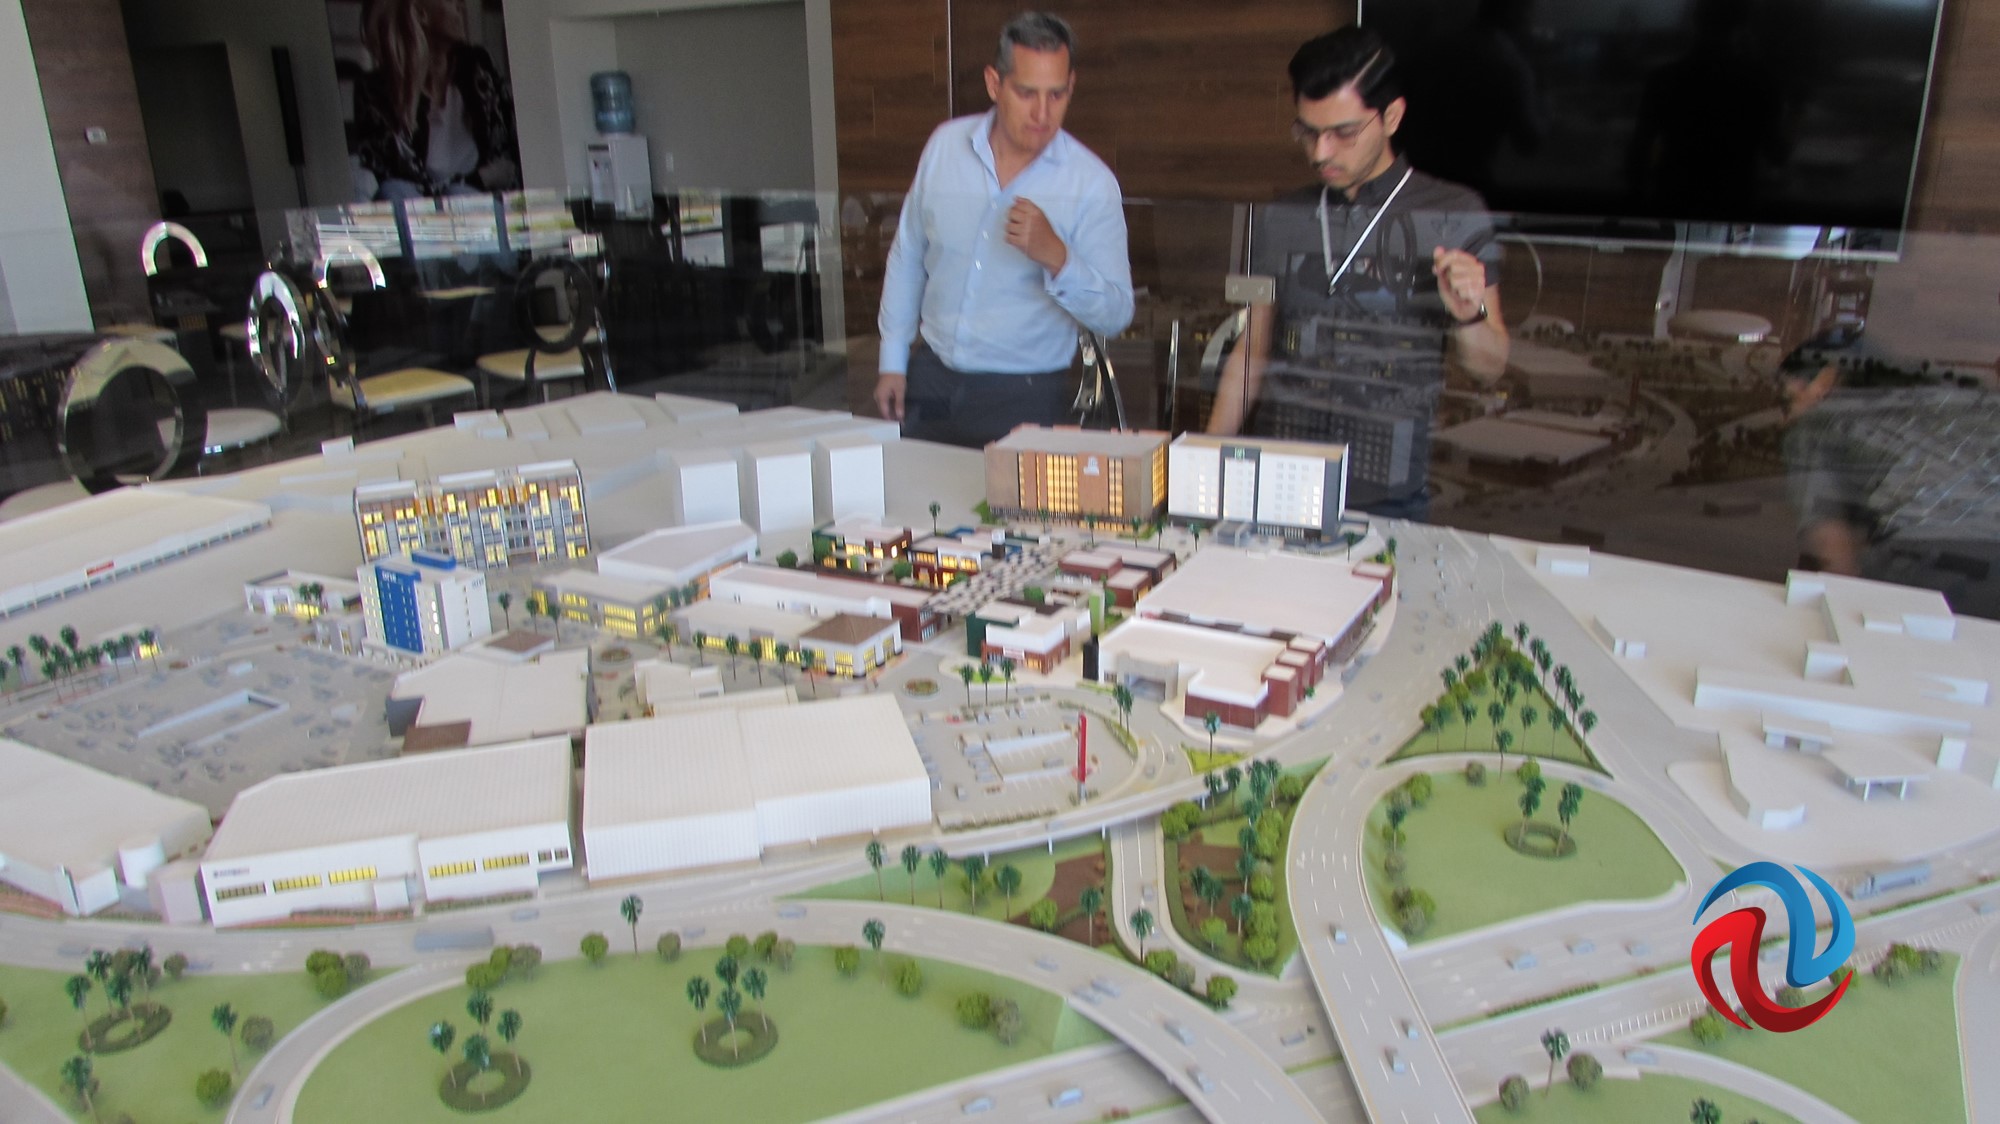 Listo para fines de 2020 proyecto Alameda Otay Town Center